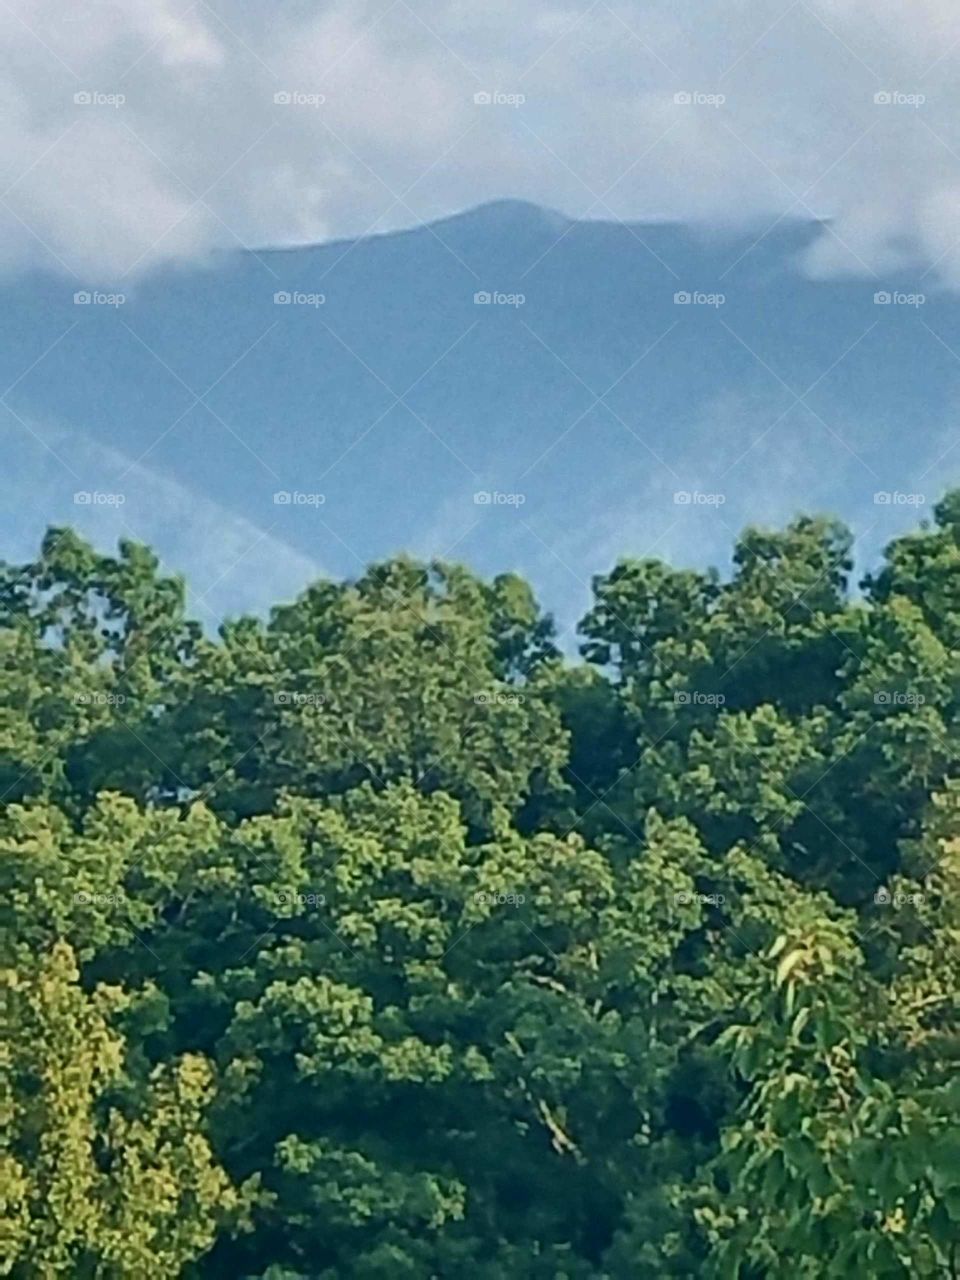 Smokey mountain view